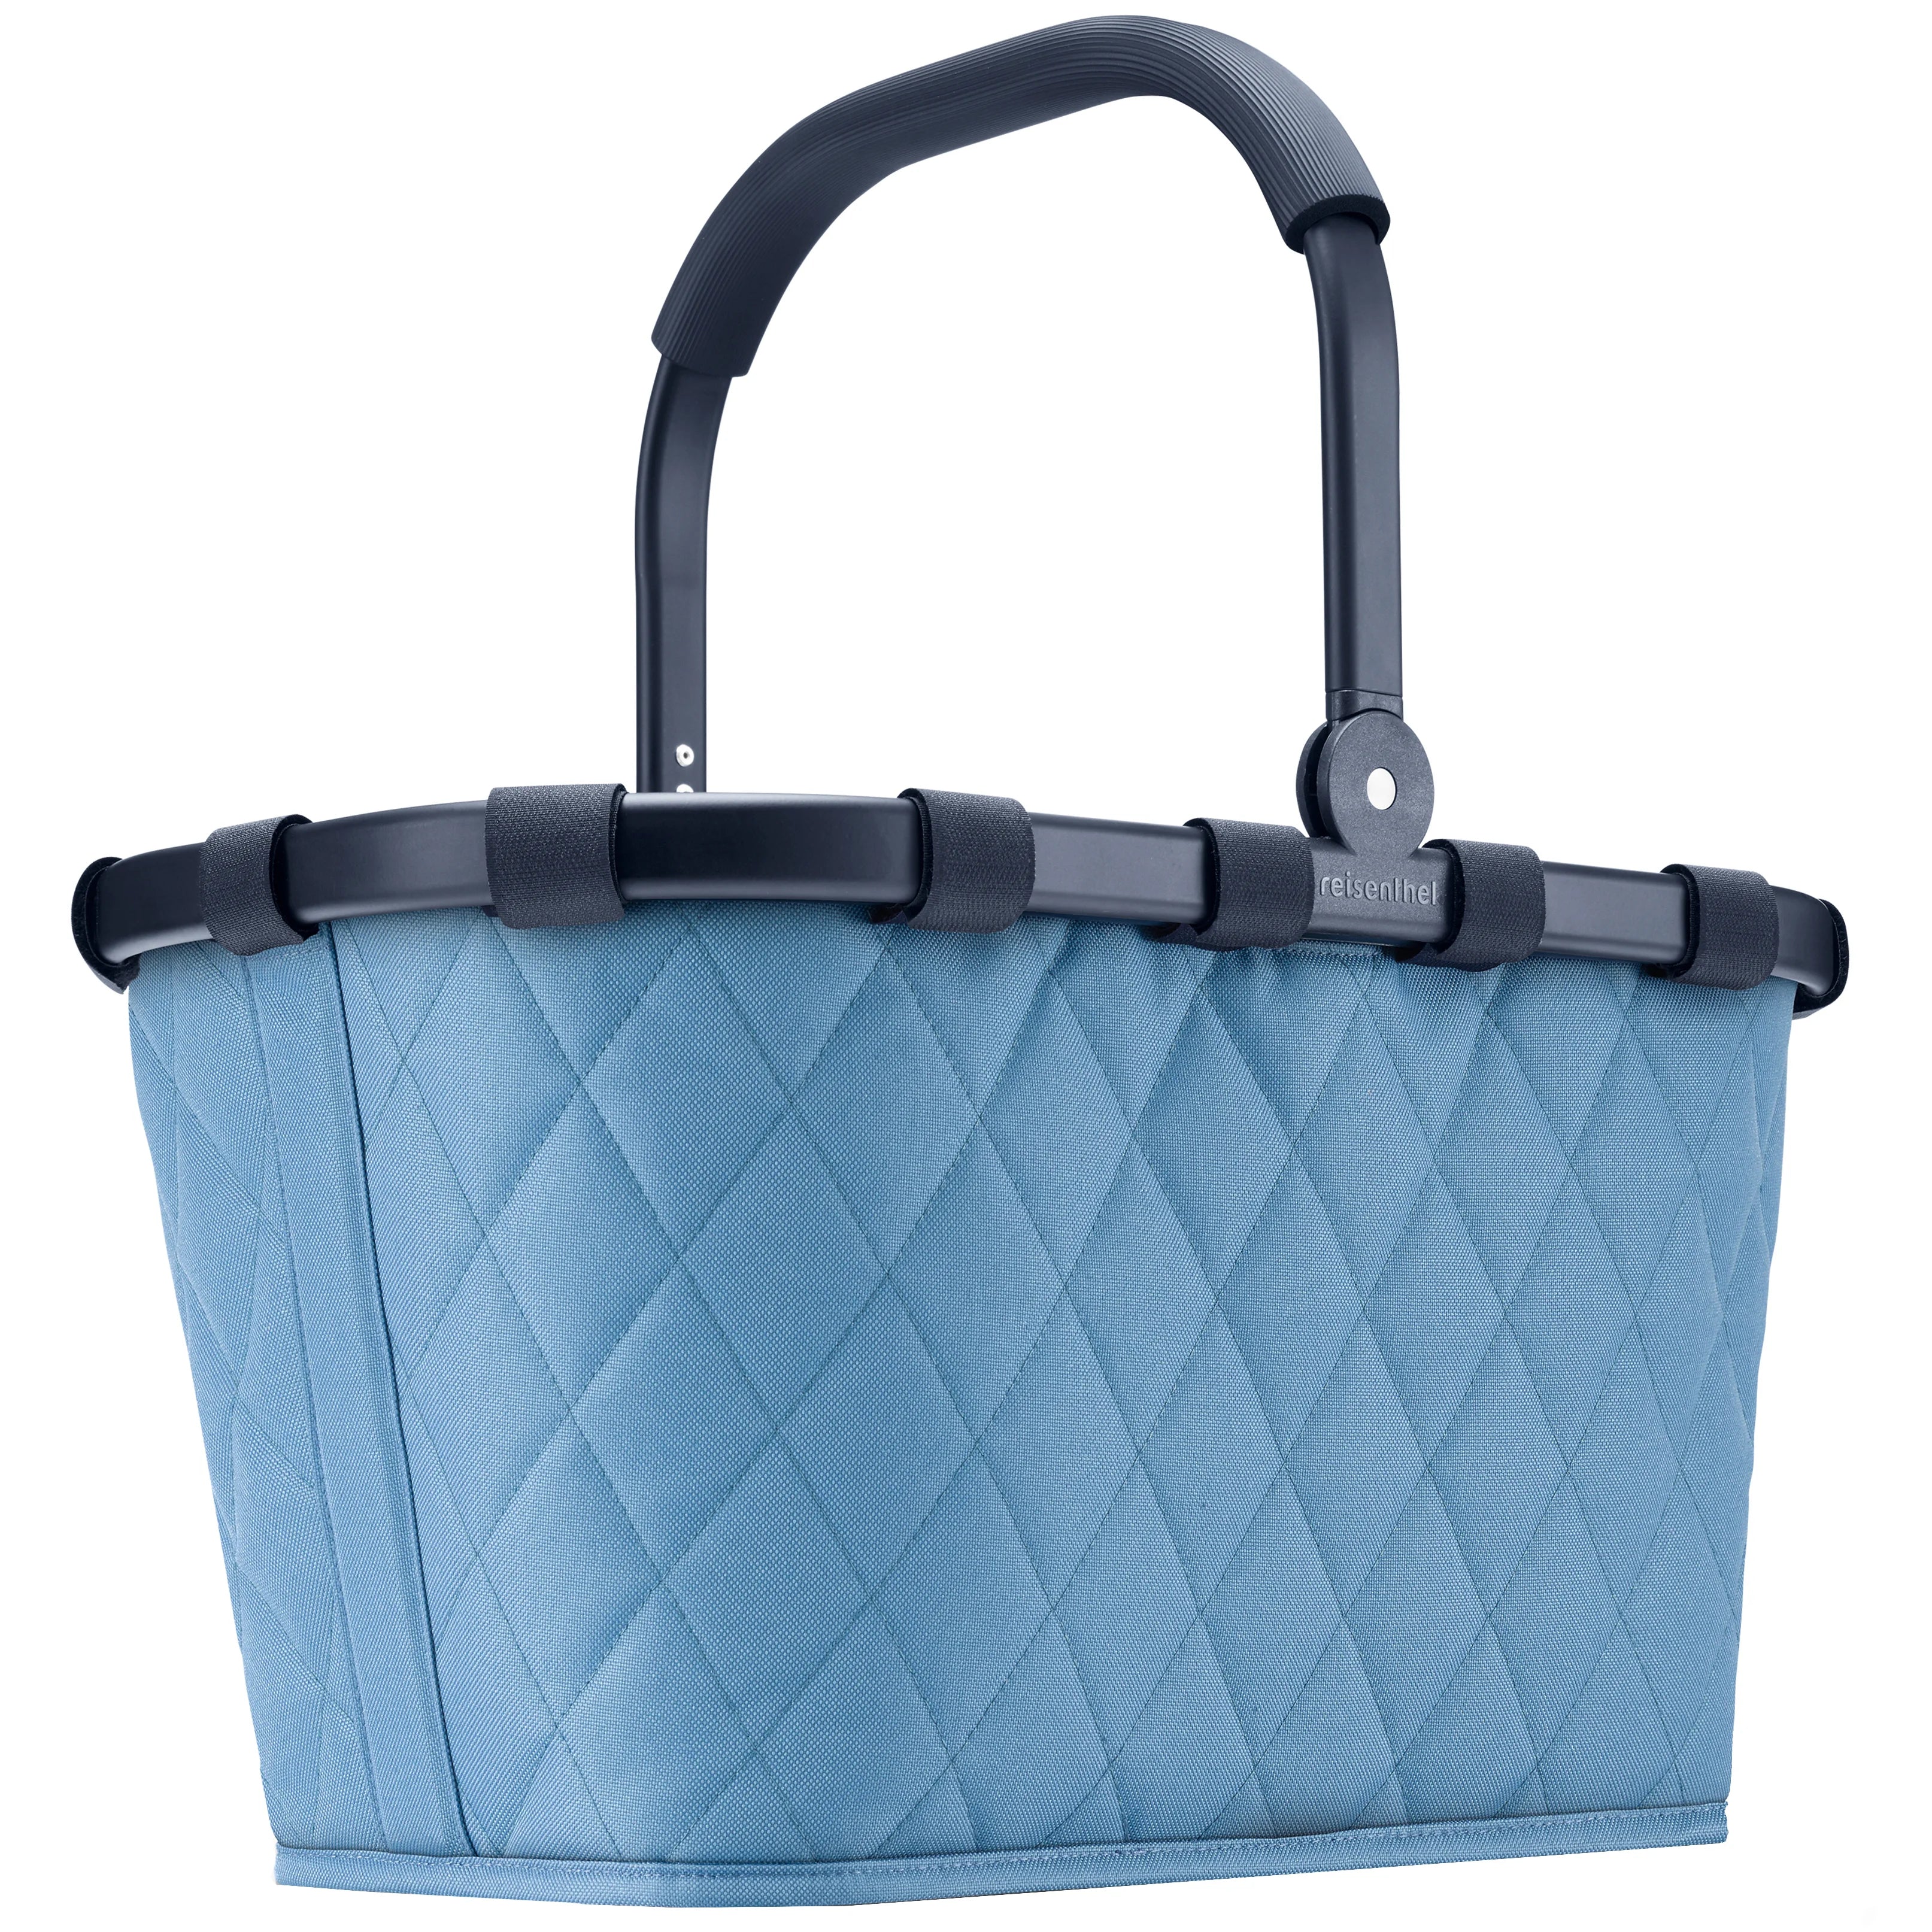 Reisenthel Rhombus Carrybag panier à provisions 48 cm - Losange Bleu